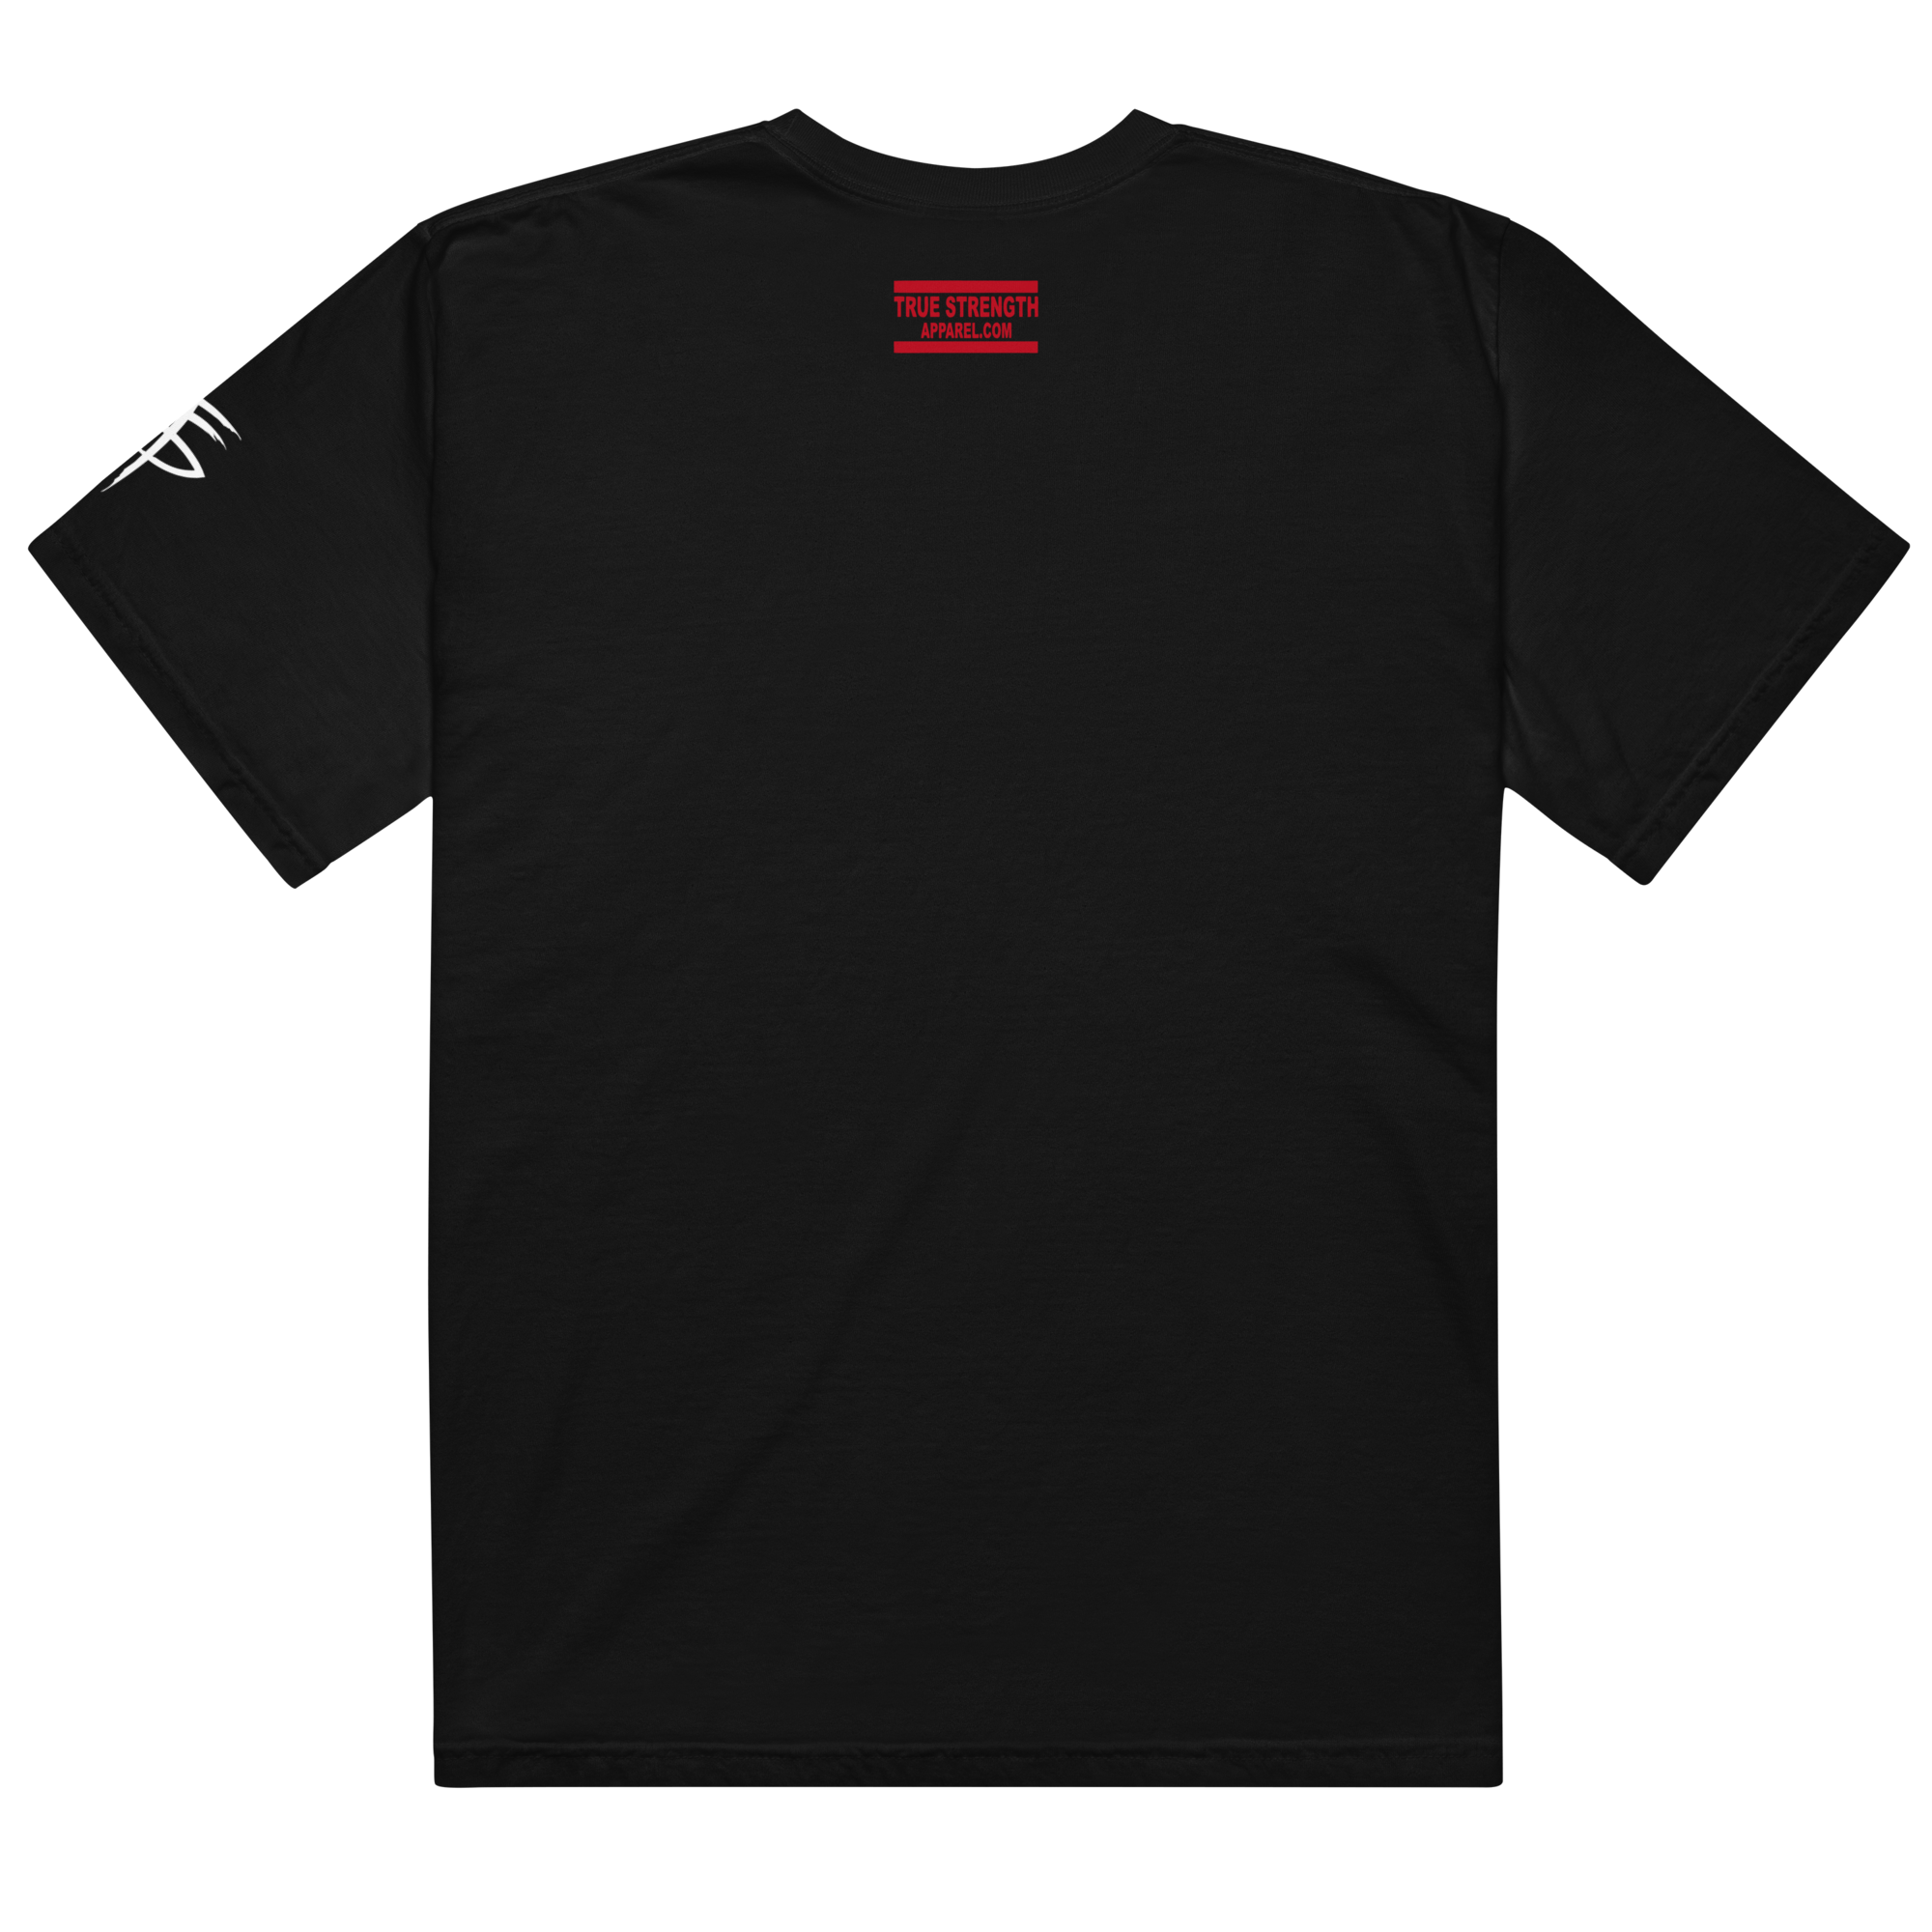 CrossView Podcast Men’s Garment-Dyed Heavyweight T-shirt